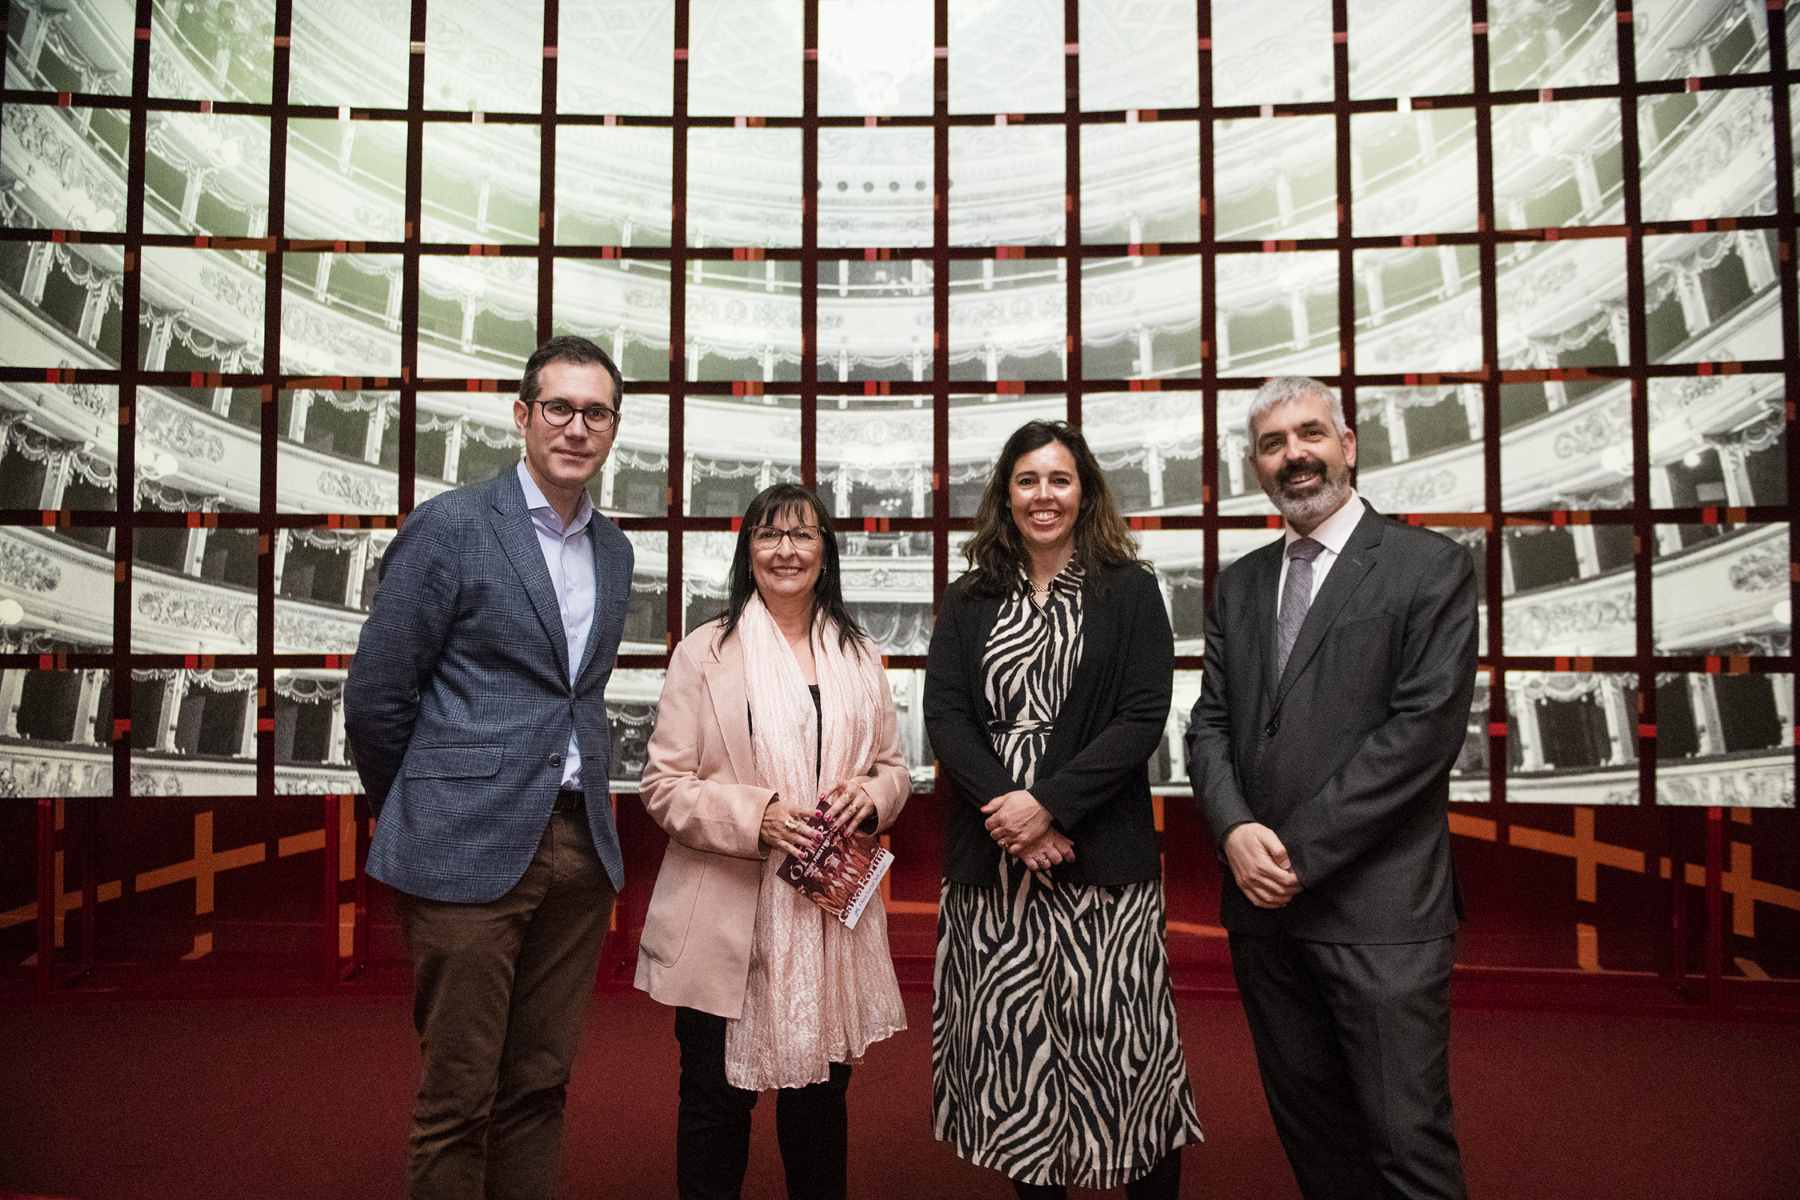 Valentí Oviedo, Elisa Durán, Kate Bailey e Ignasi Miró han inaugurado en CaixaForum Madrid la exposición Ópera. Pasión, poder y política